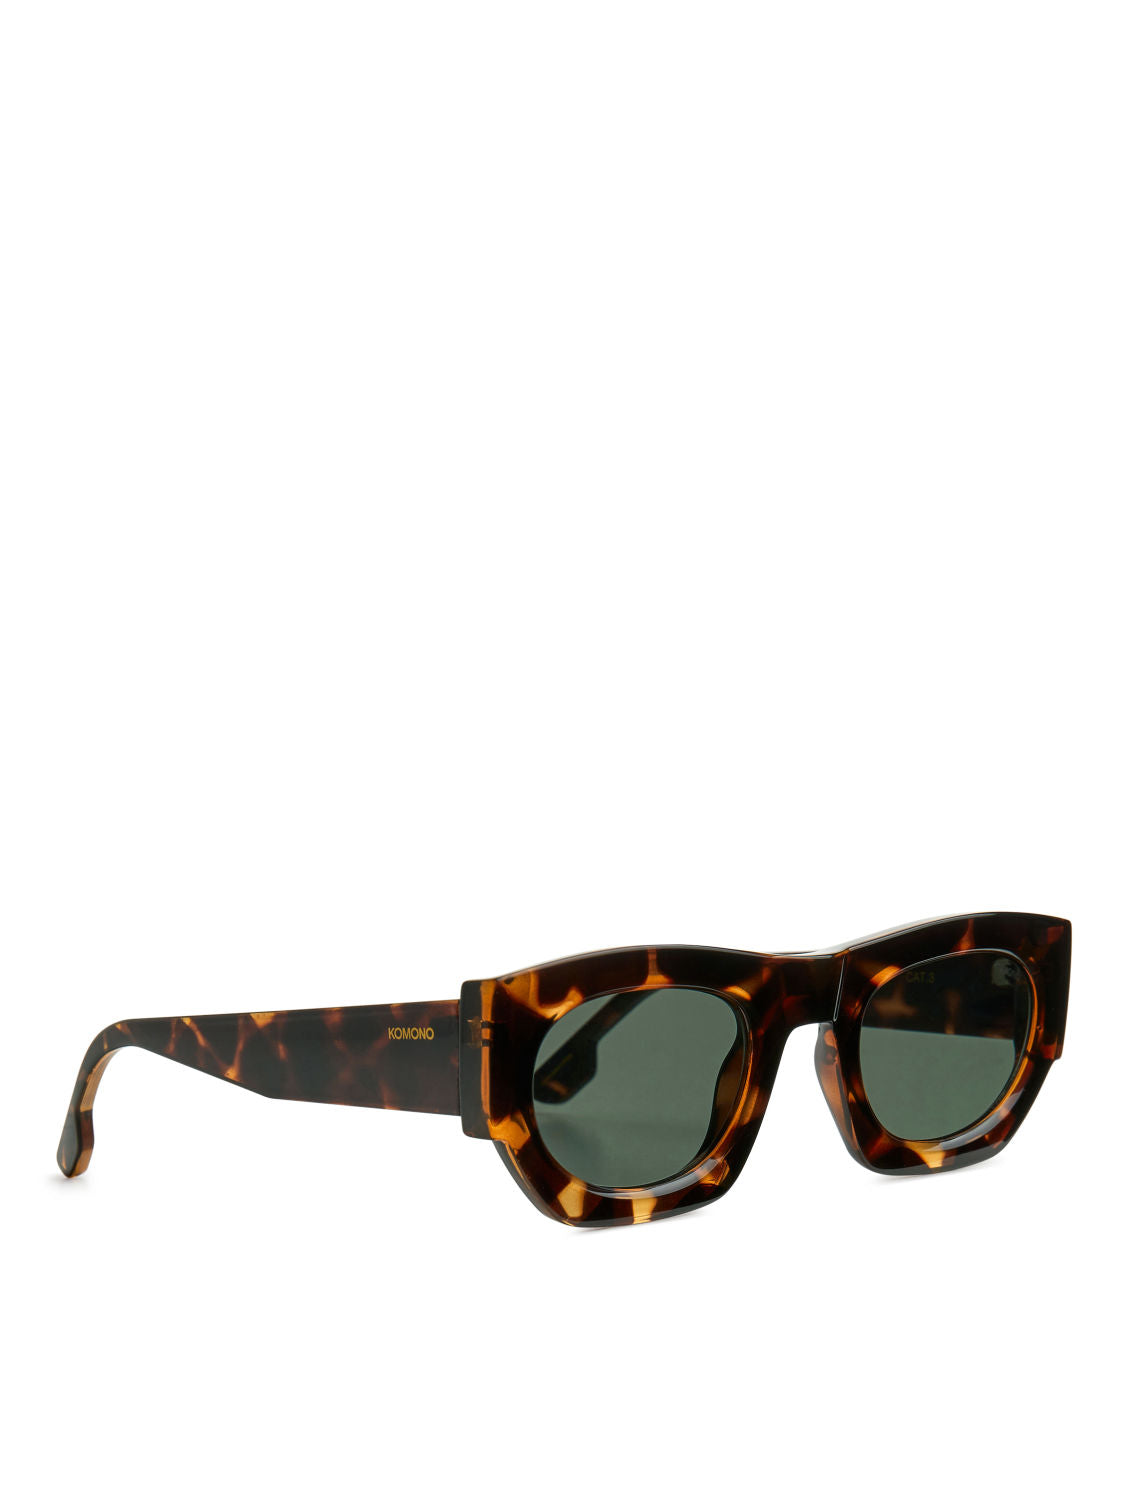 KOMONO Alpha sunglasses